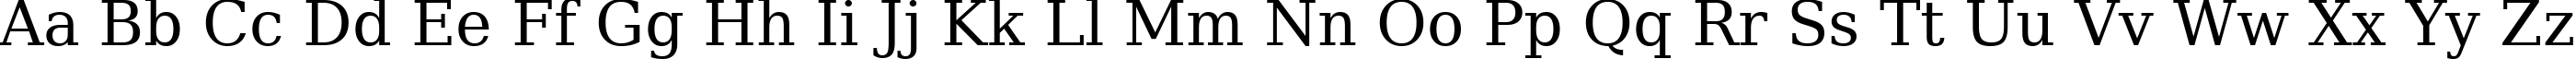 Пример написания английского алфавита шрифтом ae_Salem